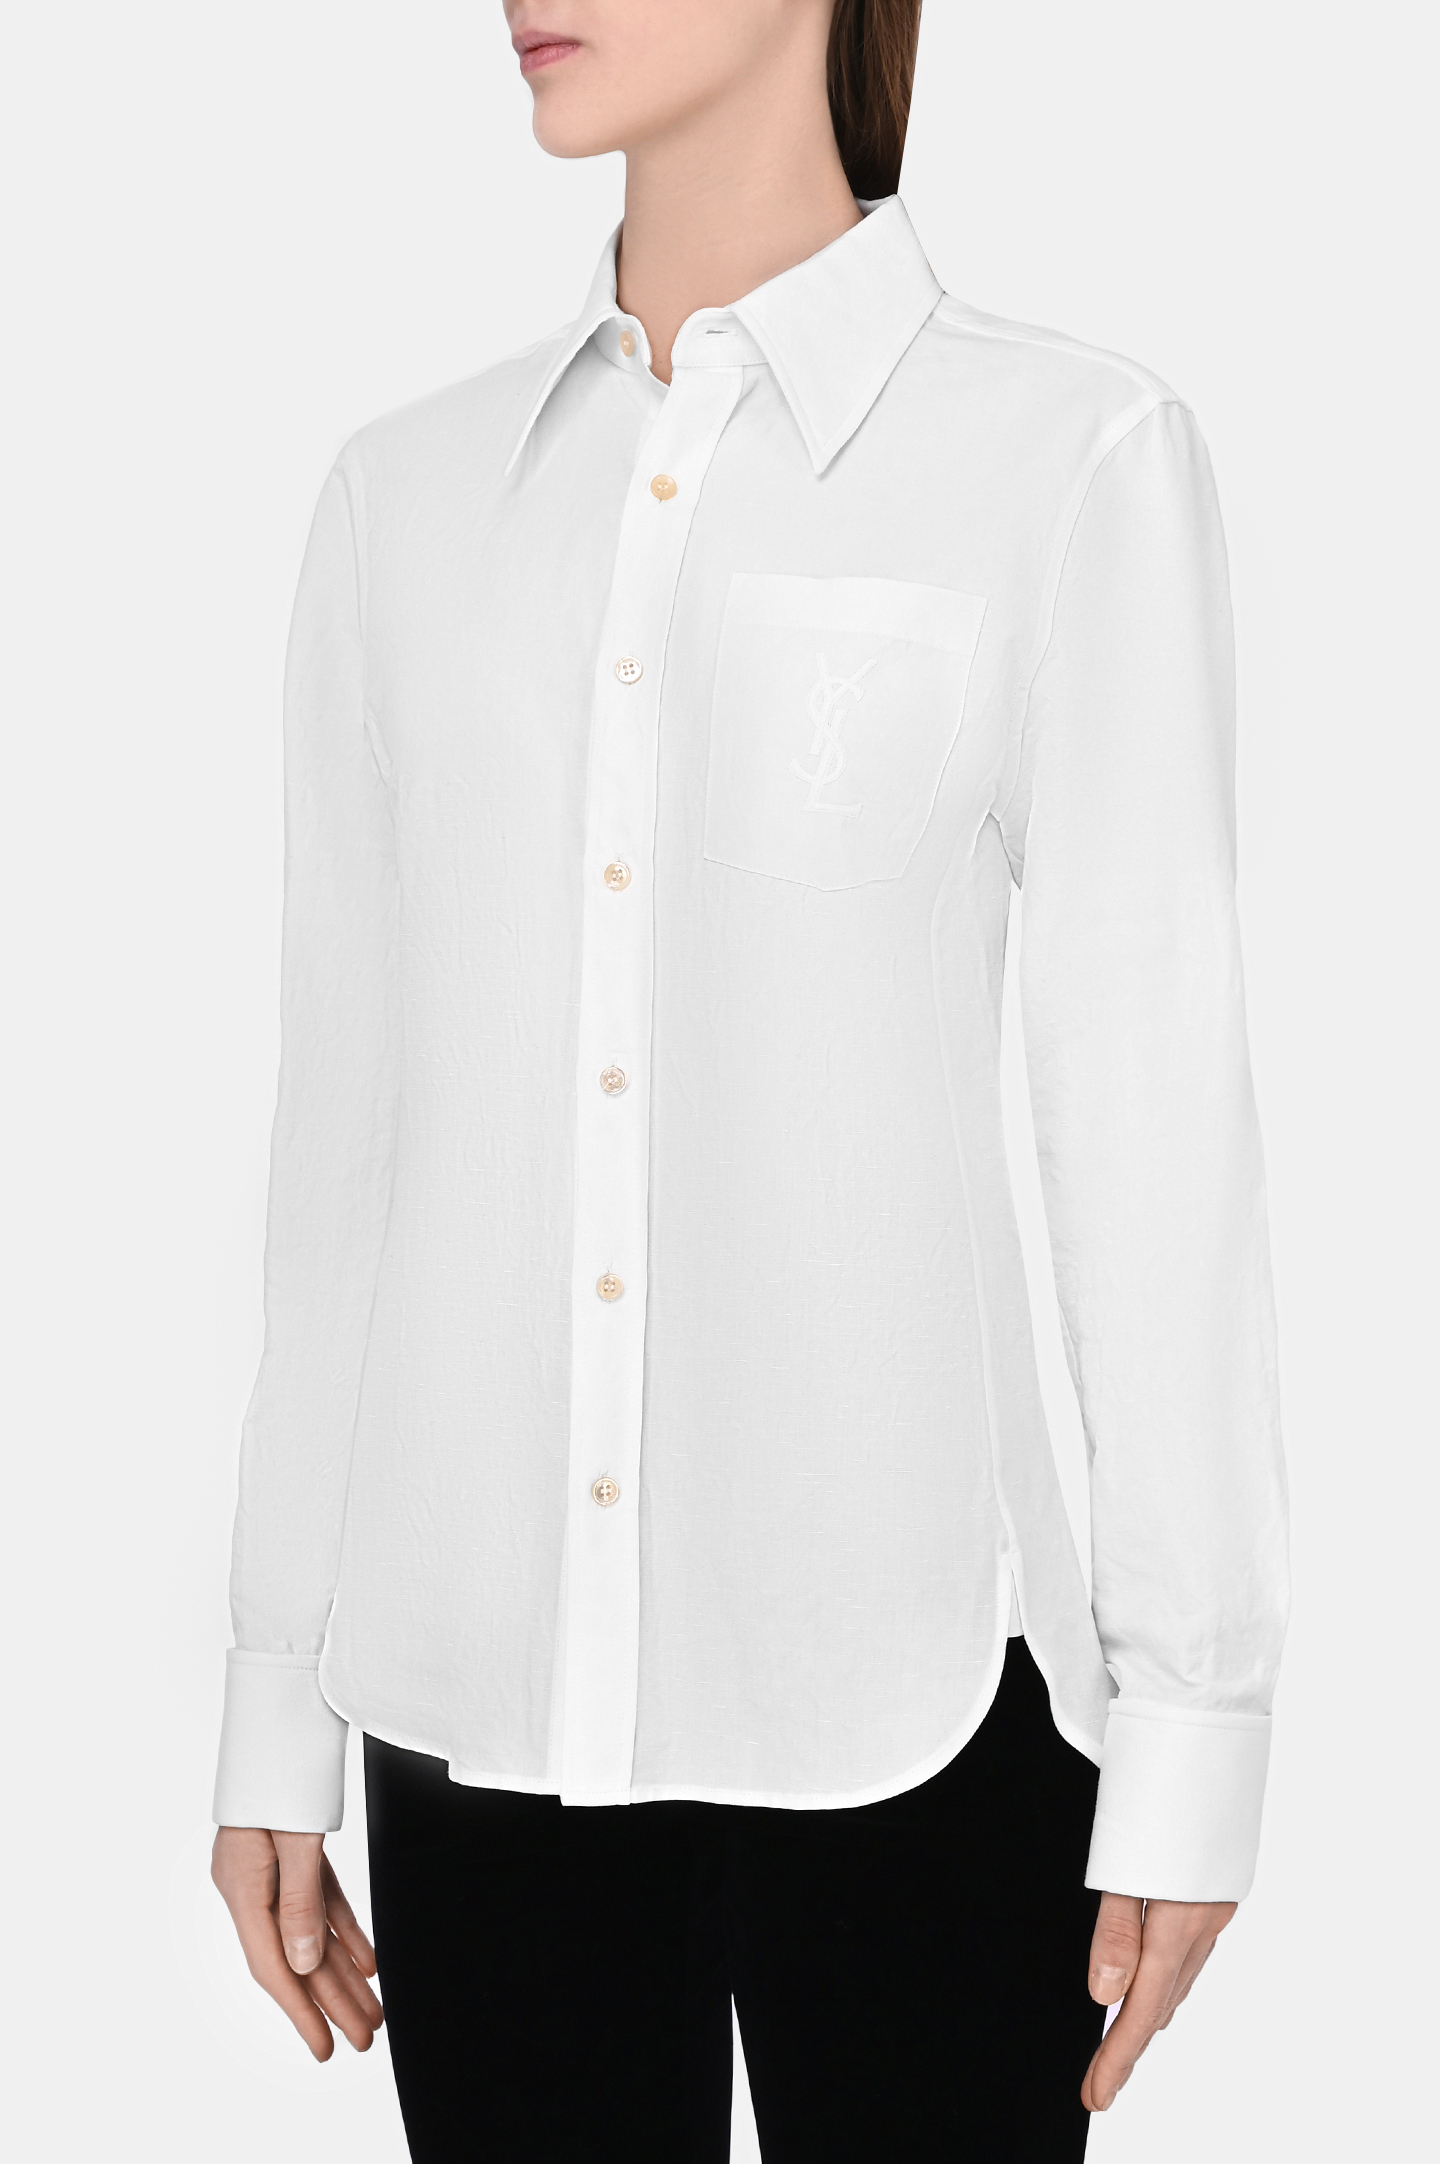 Рубашка SAINT LAURENT 671299 Y3D50, цвет: Белый, Женский